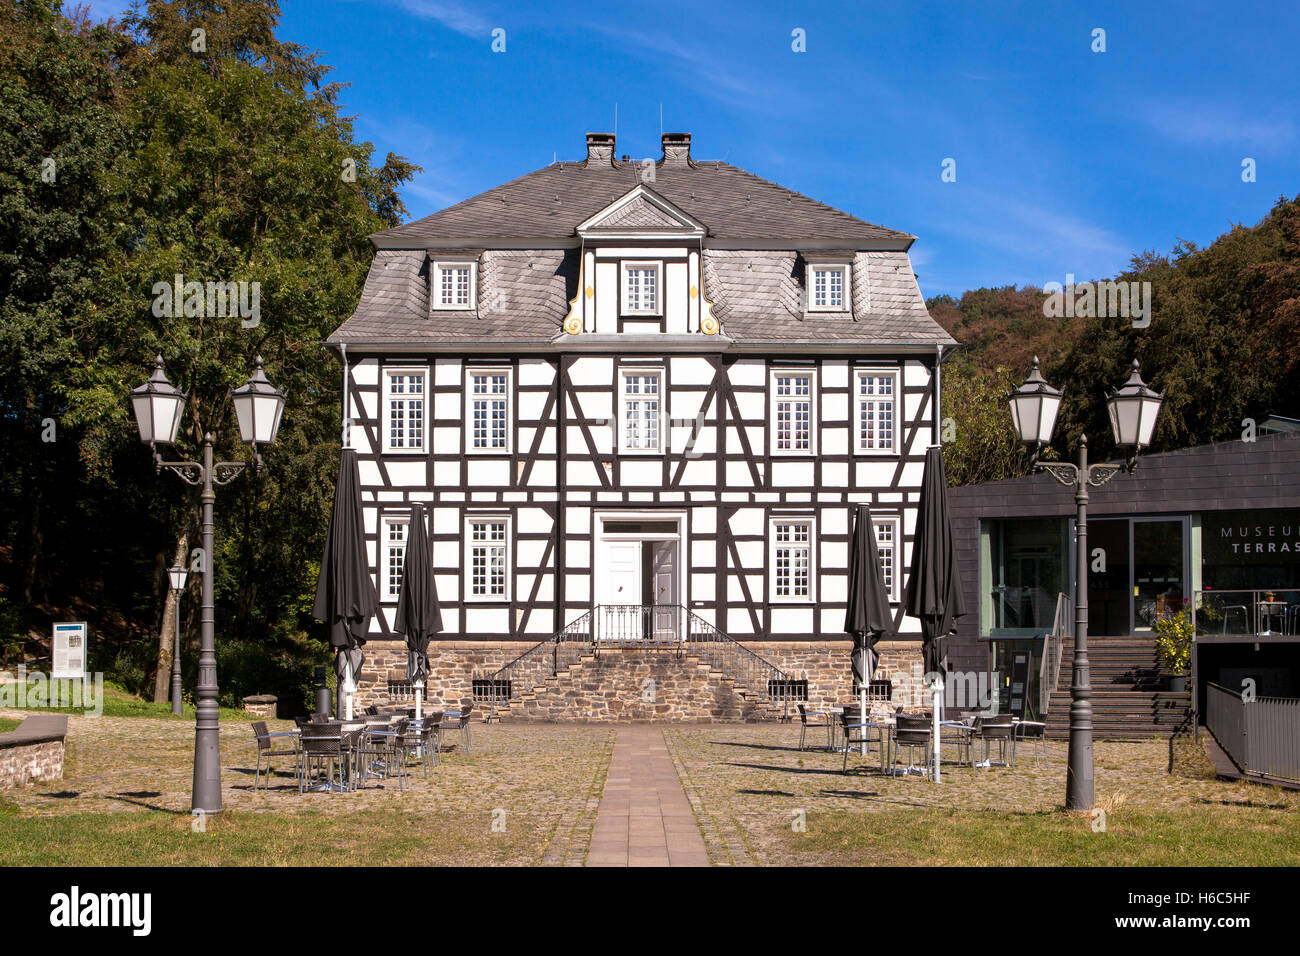 Allemagne, Hagen, Hagen, musée en plein air, maison à colombages, cet édifice abrite le Musée Allemand de forgé. Banque D'Images